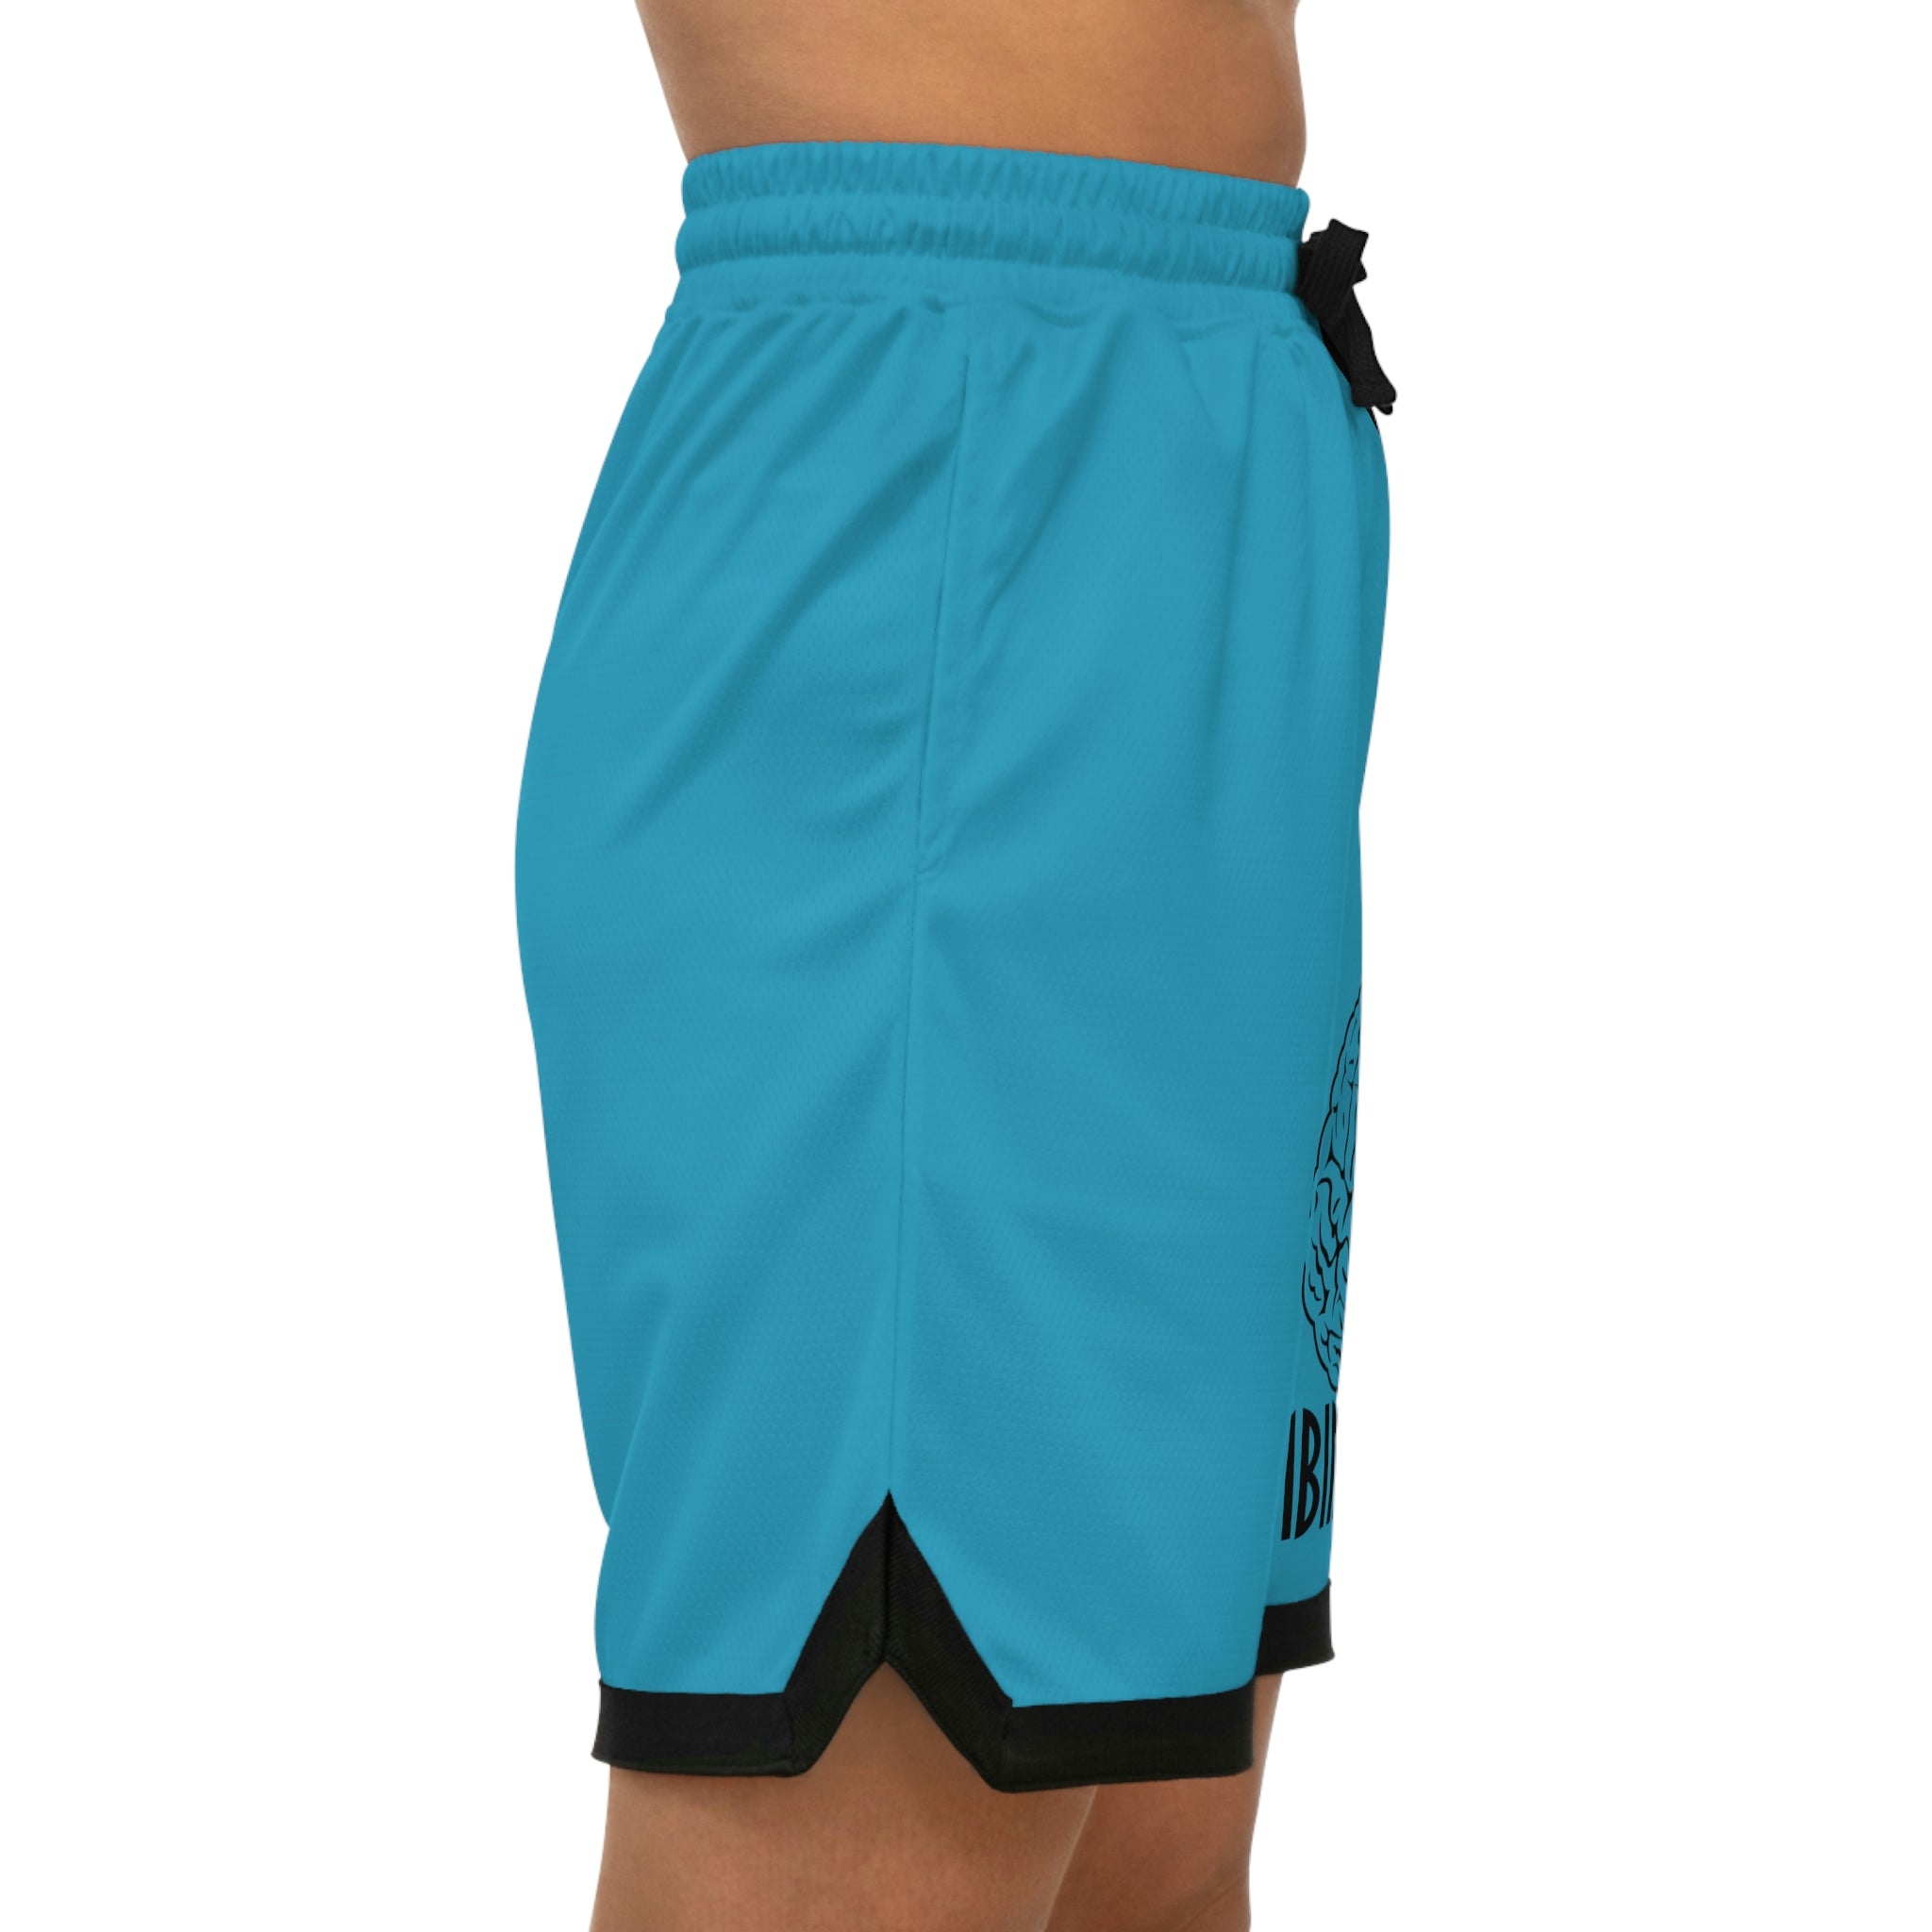 Combinedminds Basketball Shorts Turquoise/Black Logo